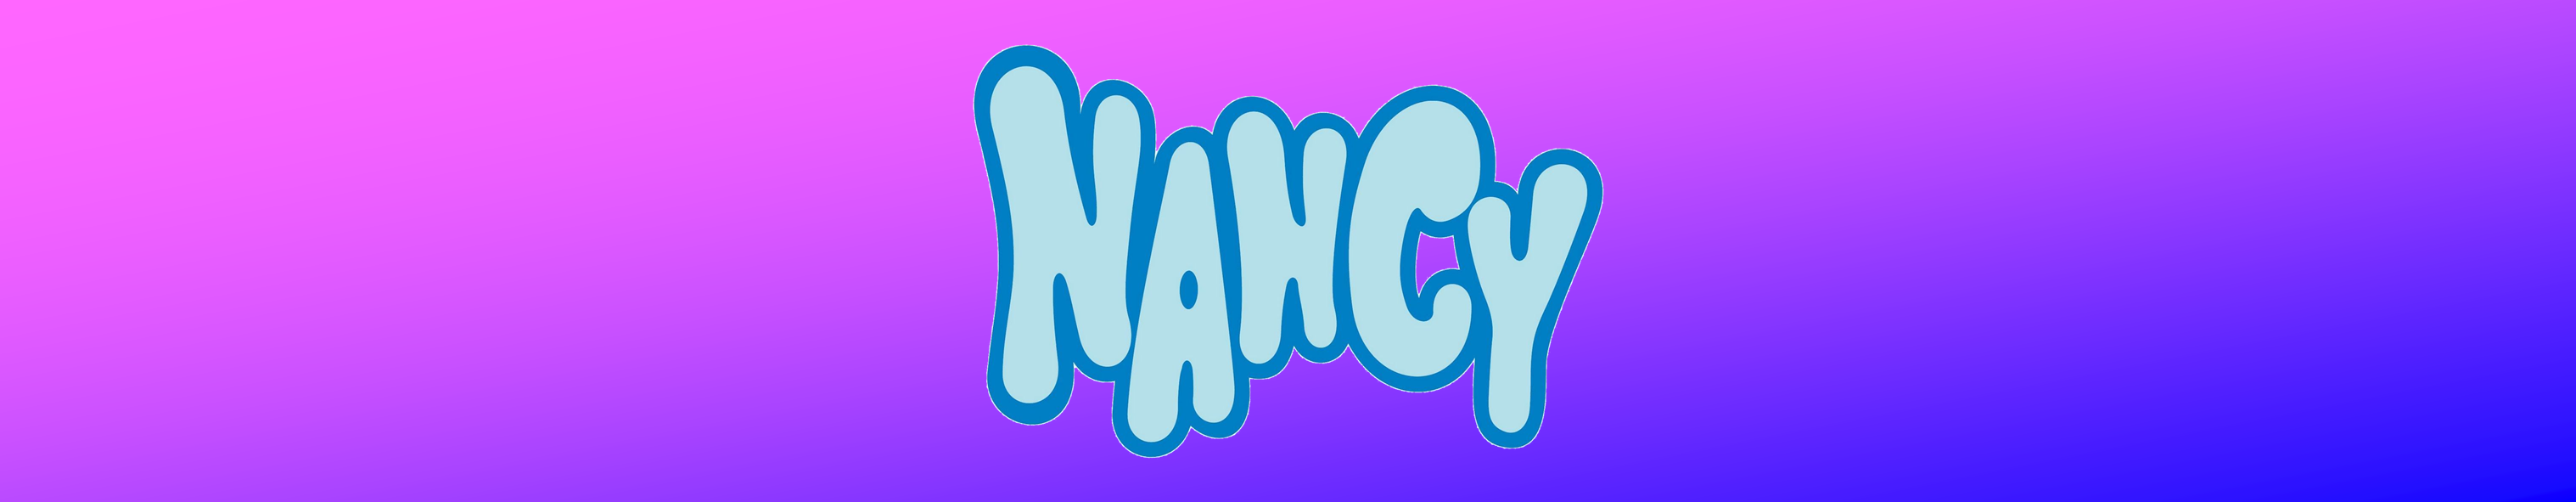 nancy_banner_1